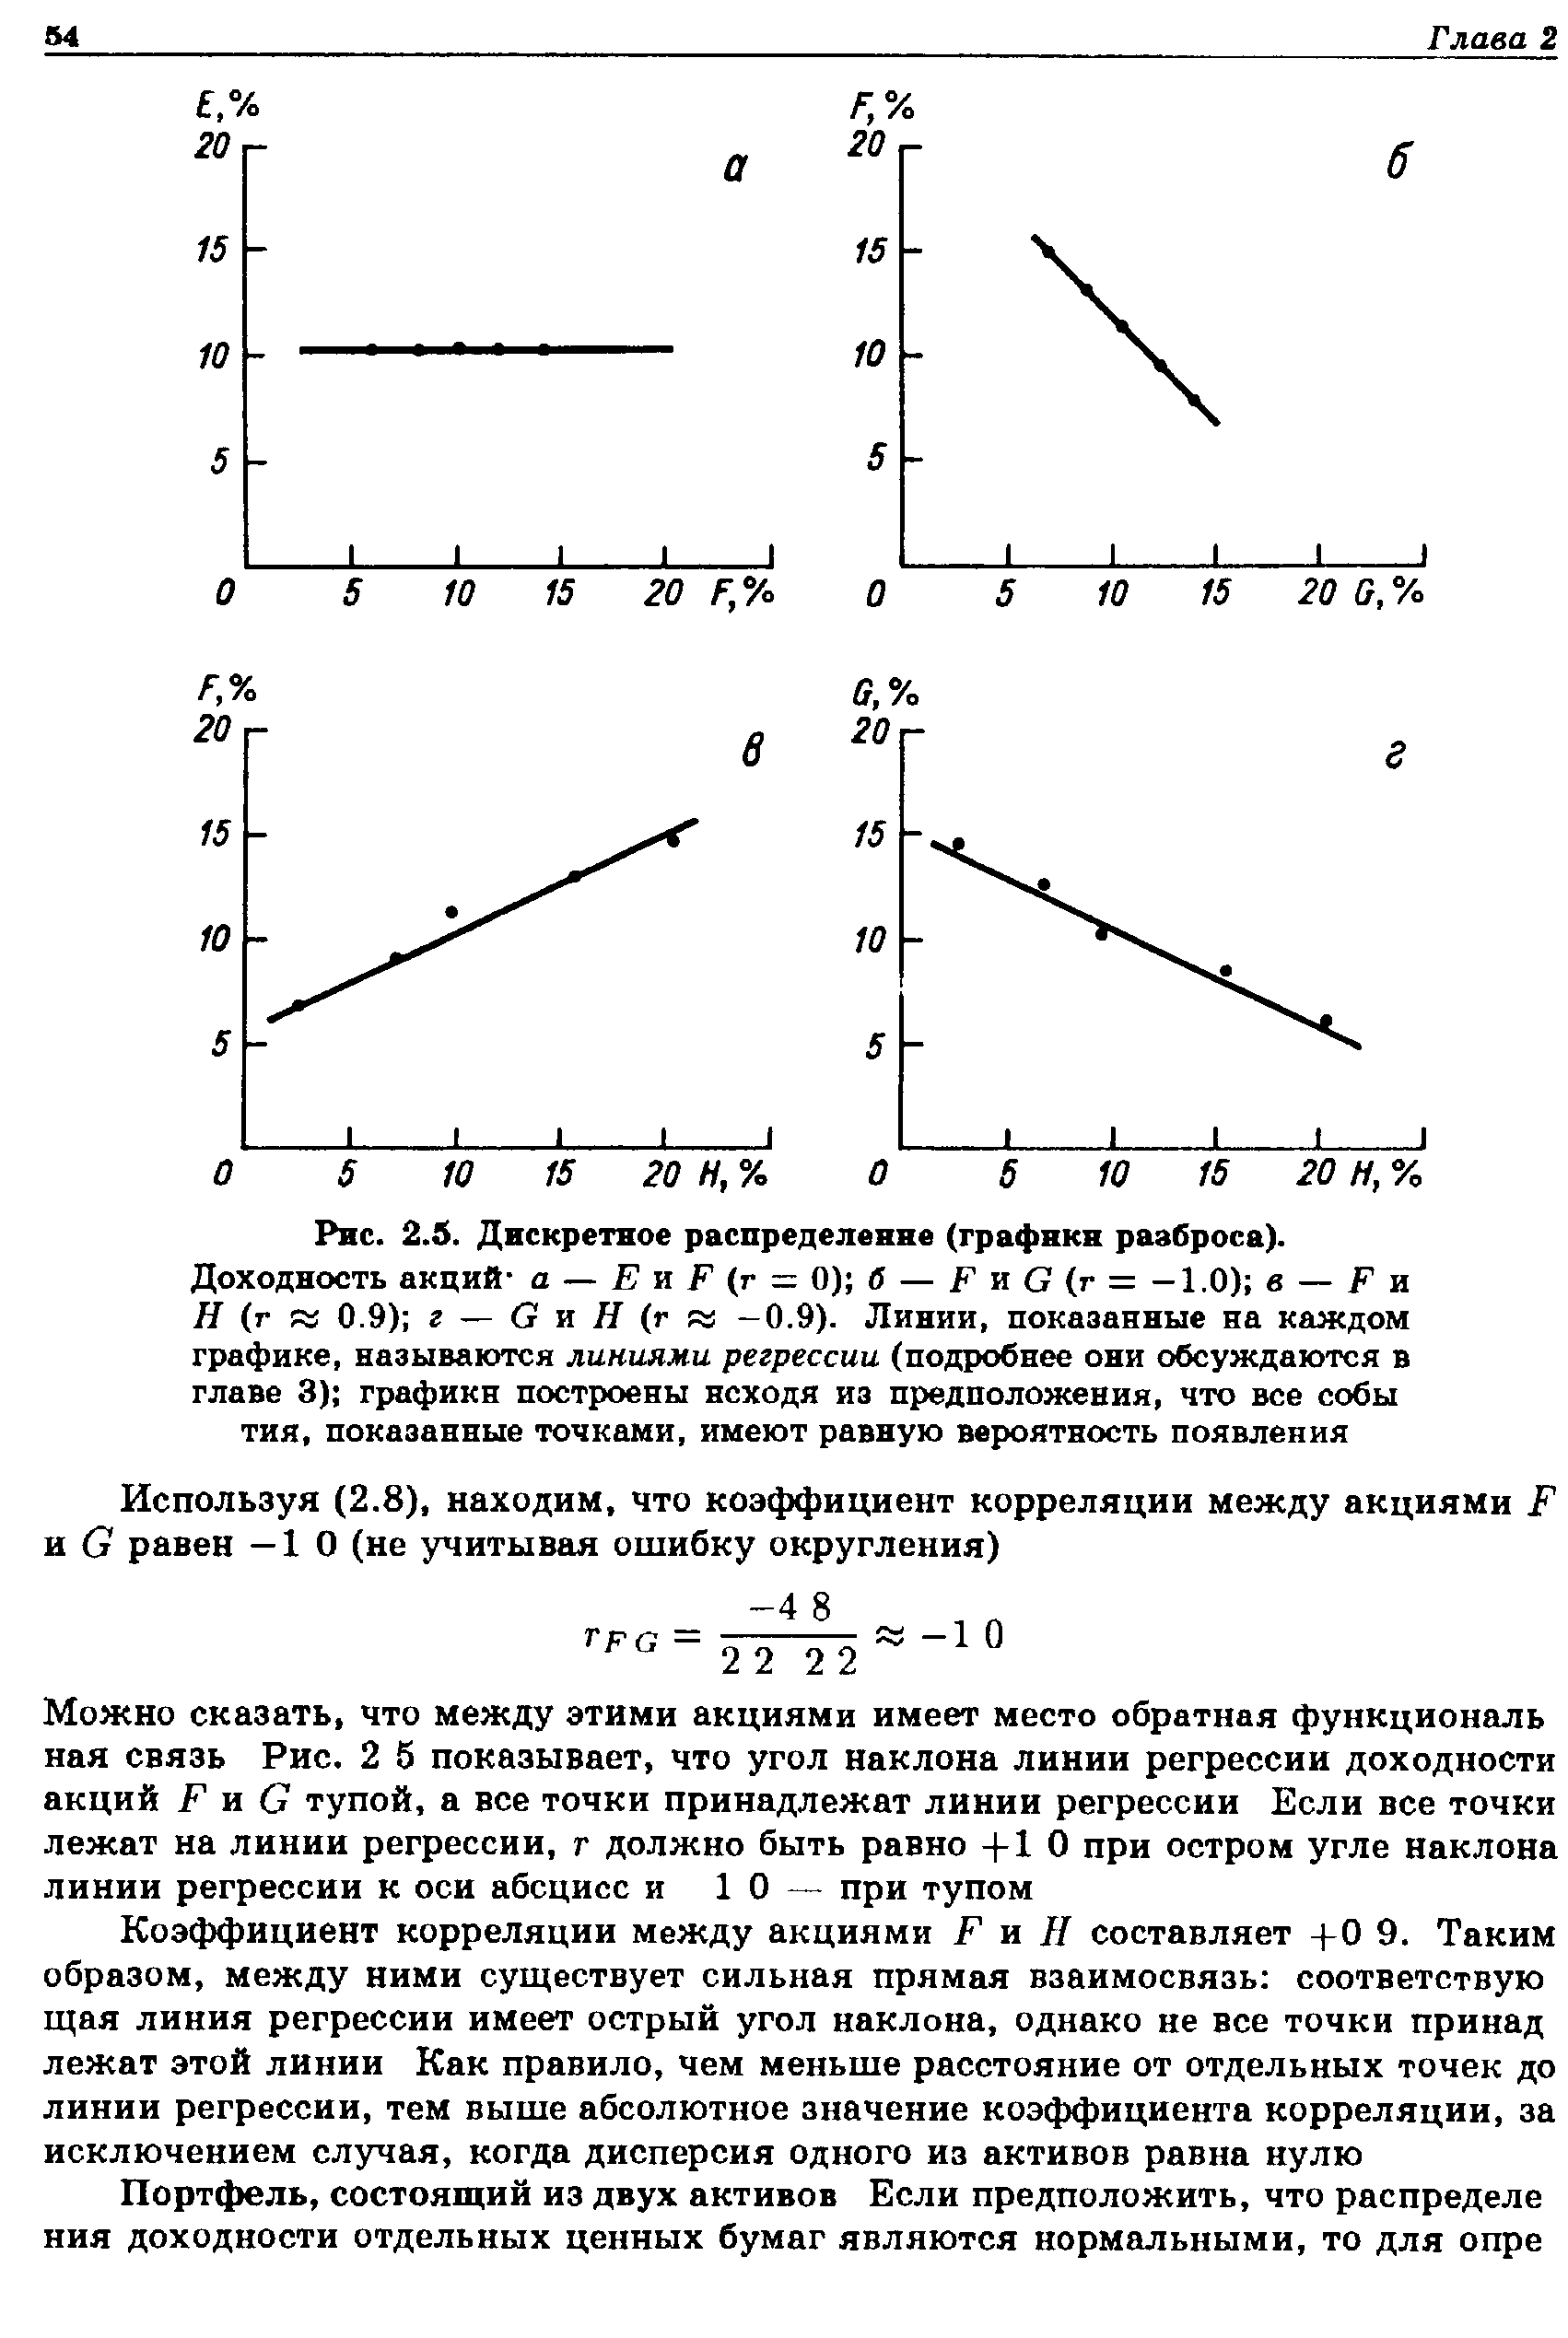 Рис. 2.5. Дискретное распределение (графики разброса).
